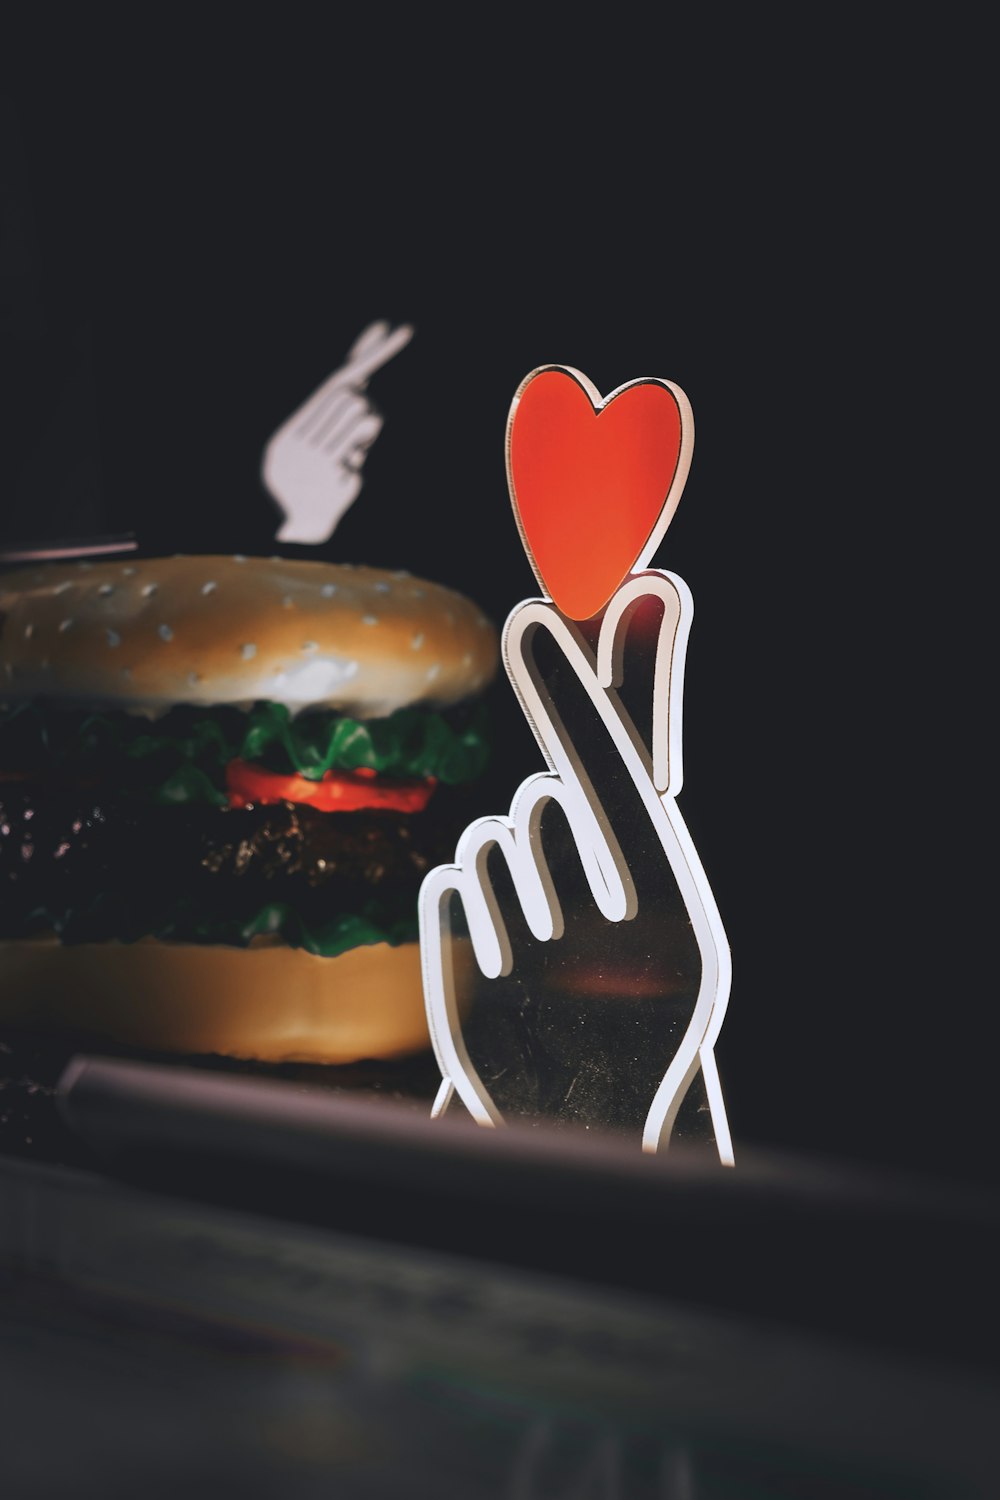 una mano sosteniendo un papel en forma de corazón recortado de una hamburguesa